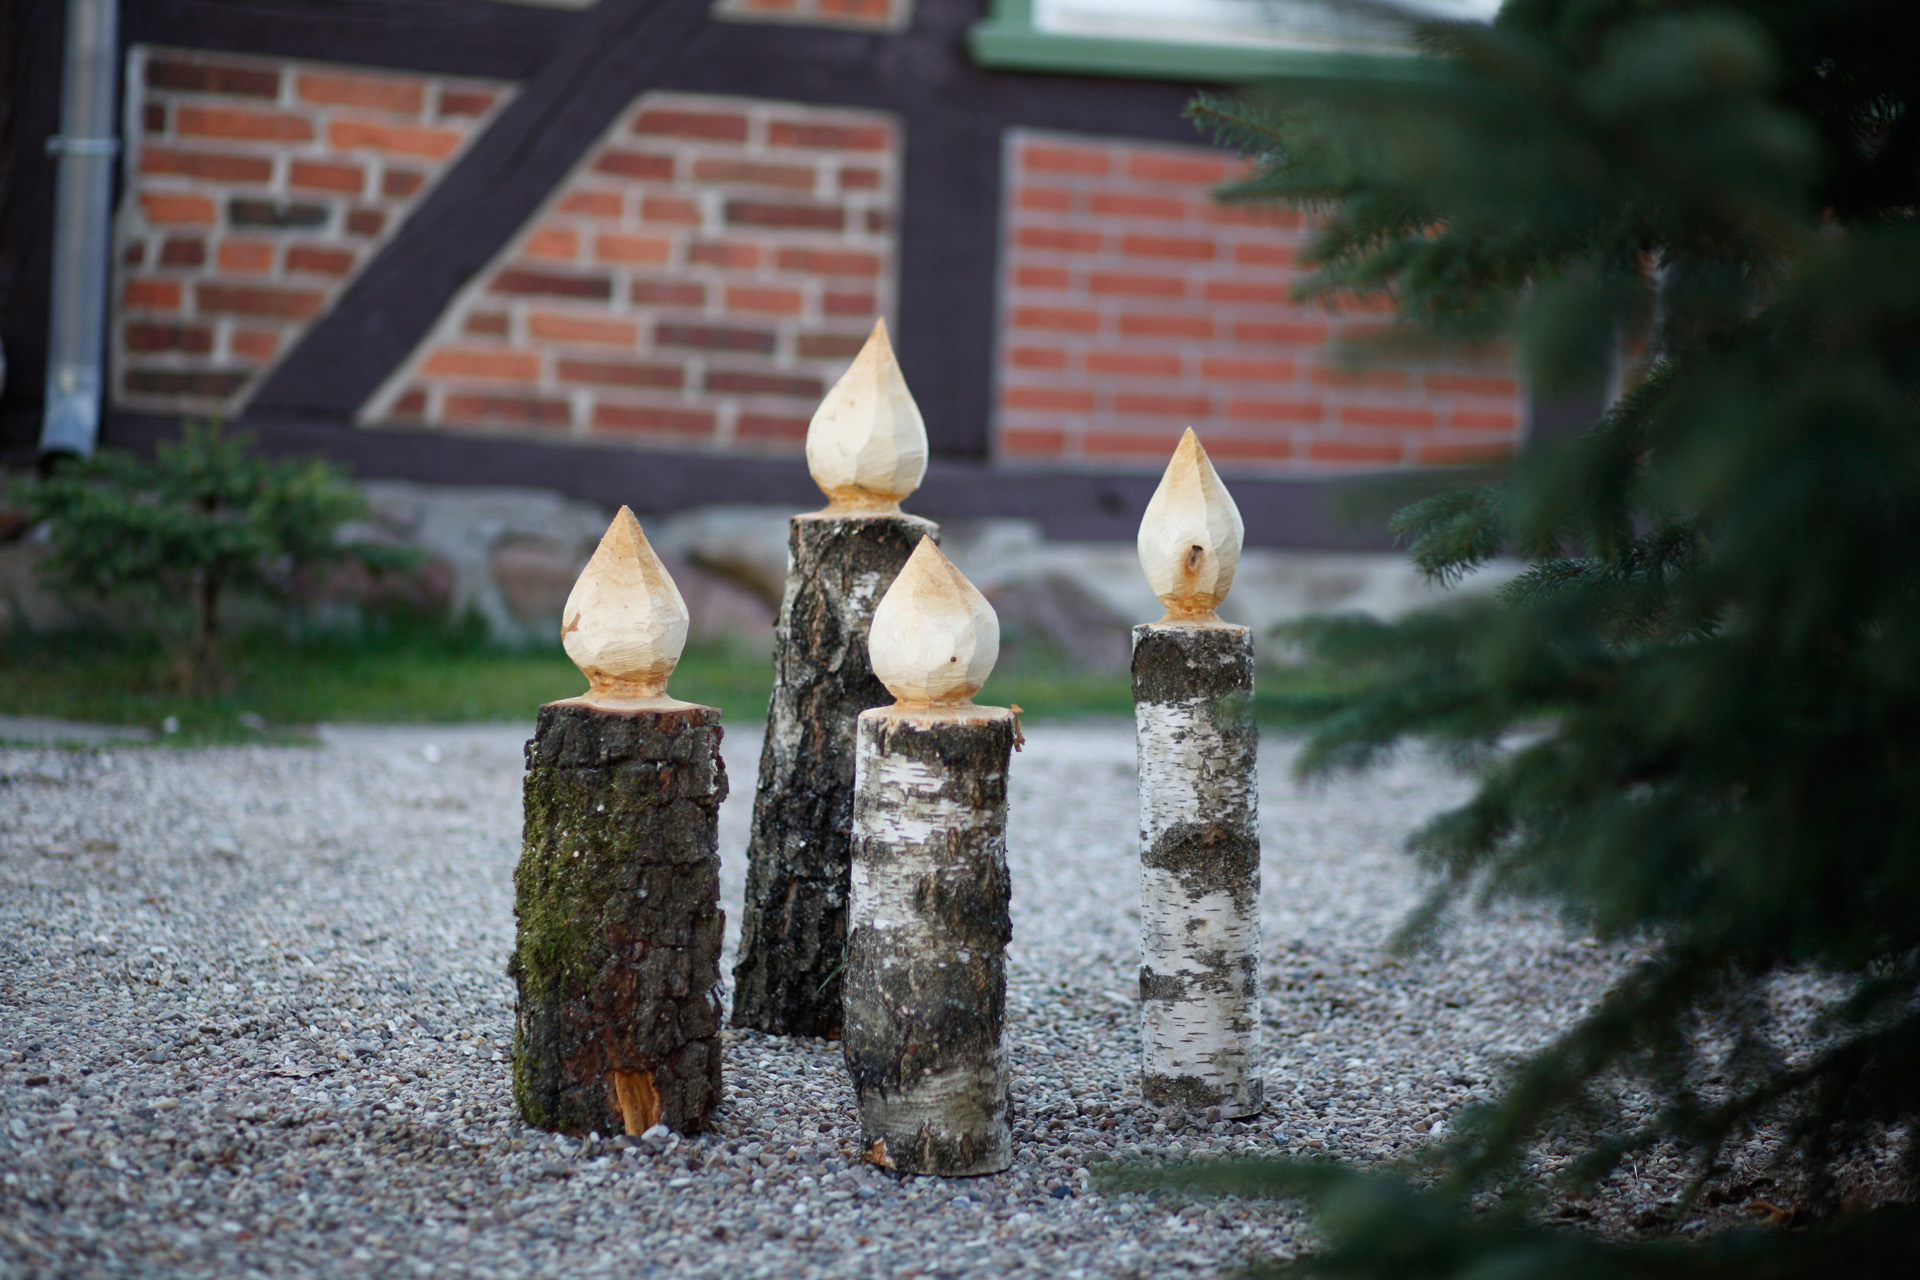 Quatro castiçais de bricolage em madeira num caminho ao lado de um abeto